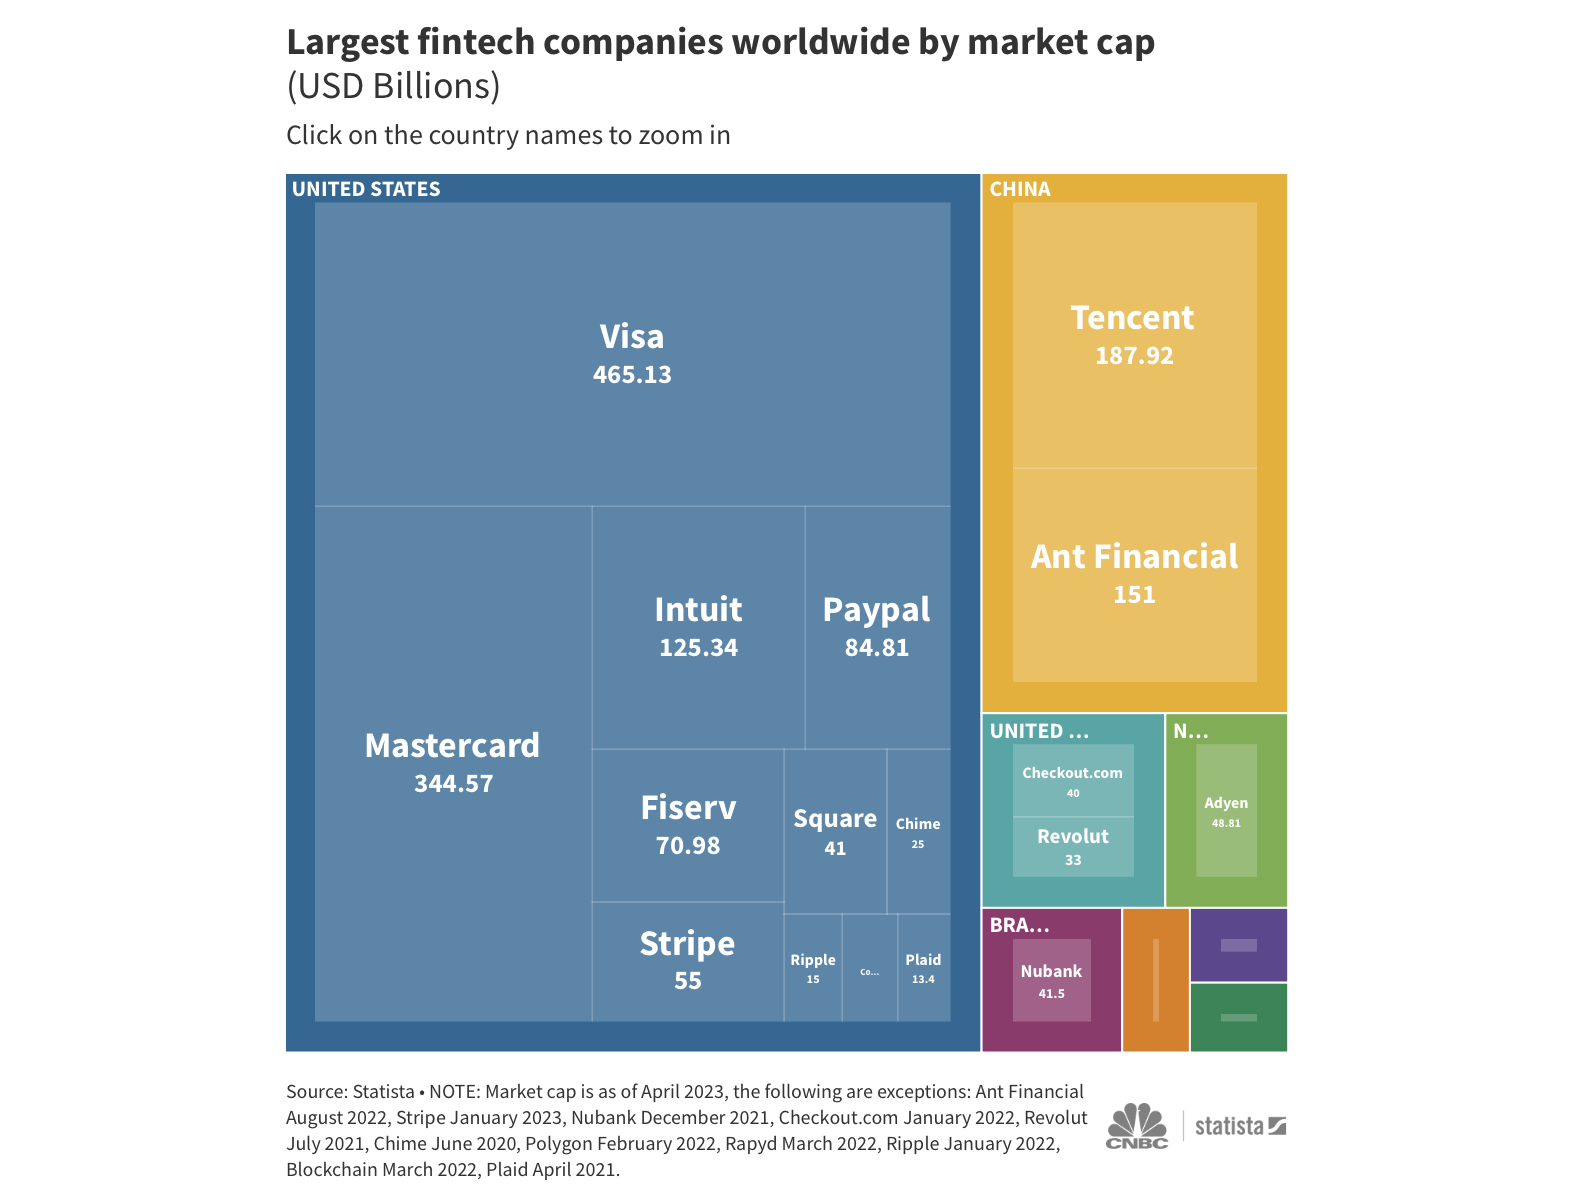 Các công ty fintech lớn nhất thế giới dựa trên vốn hoá.